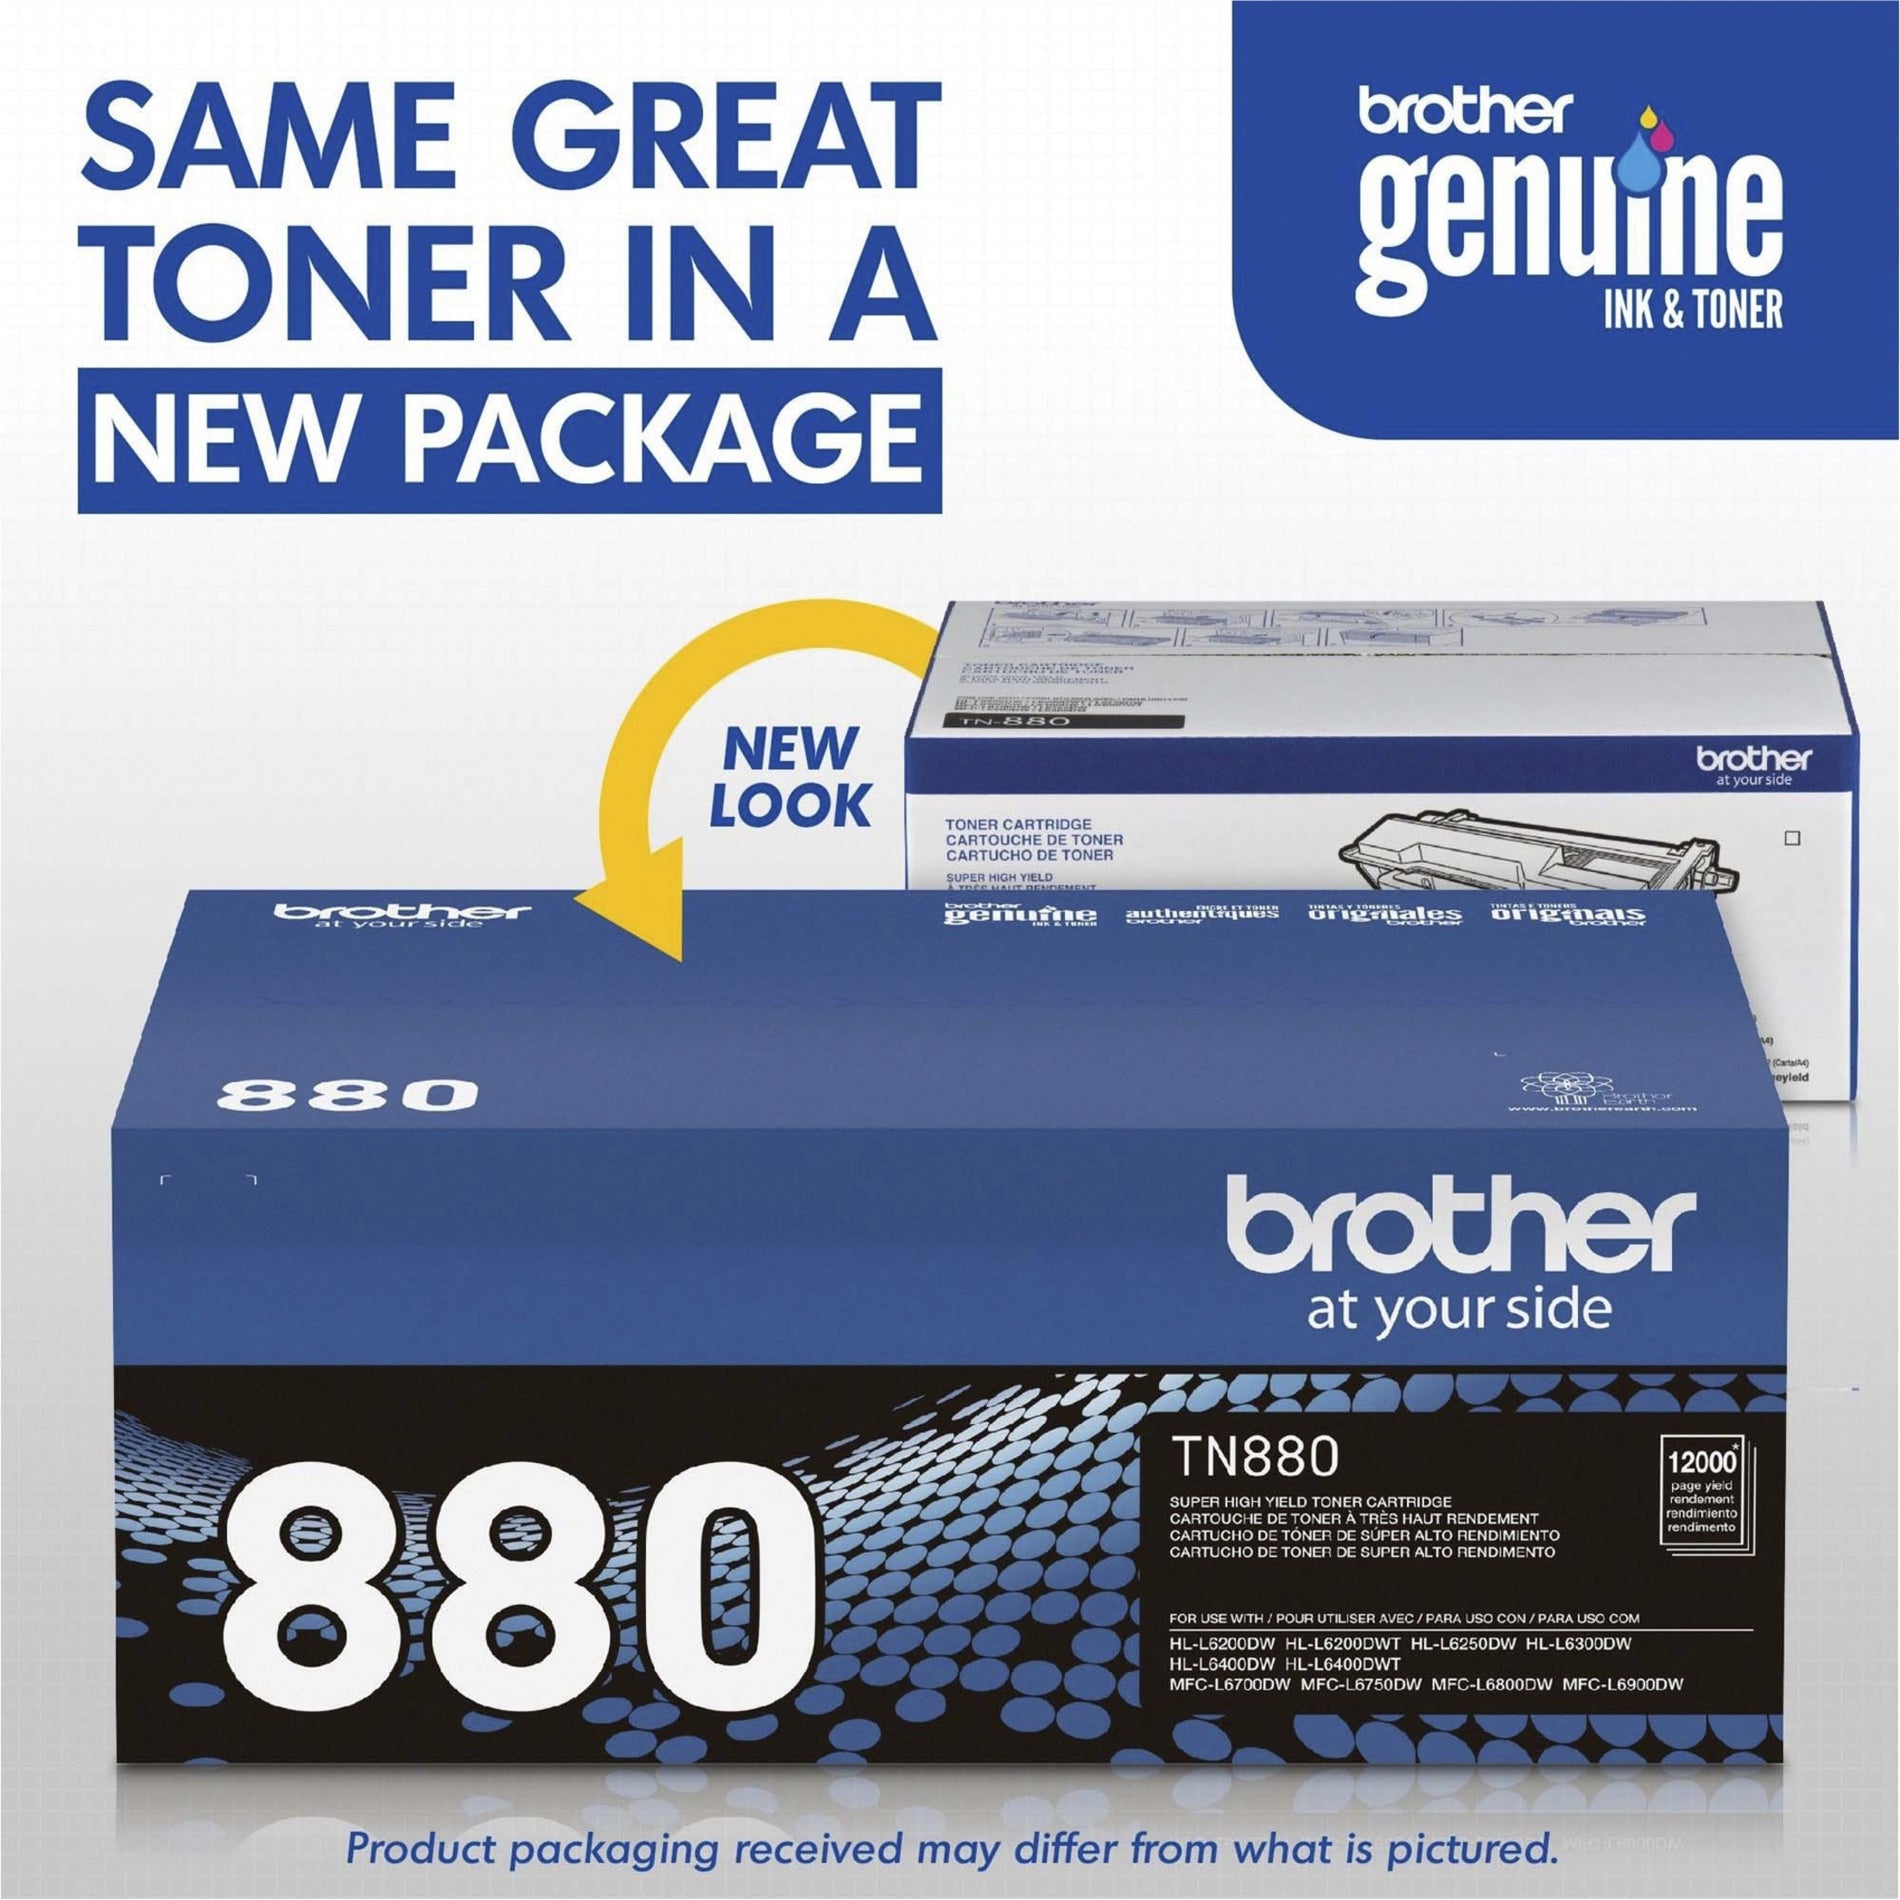 ブラザー TN880 超高収量 トナーカートリッジ、ブラック、12000ページ Brother TN880 超高収量 ブラック、12000ページ